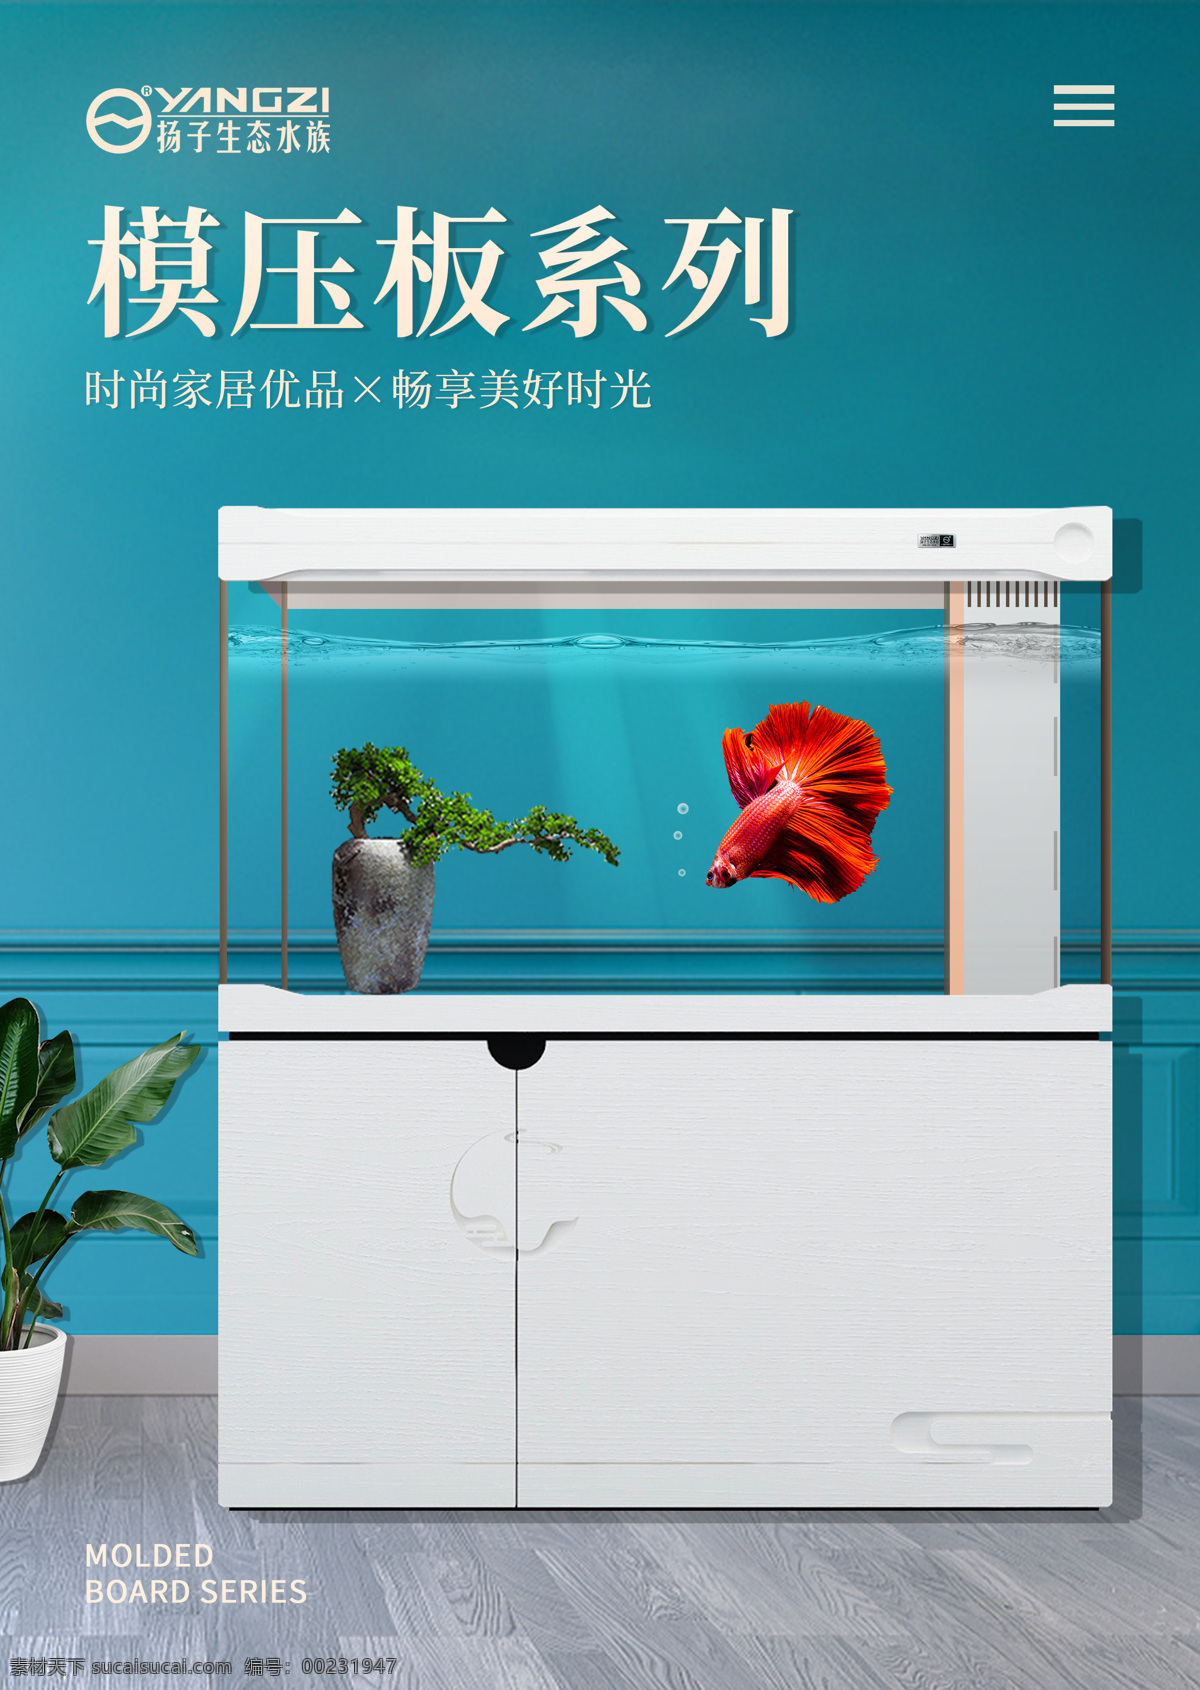 产品海报 扬子生态水族 设计排版 水族箱